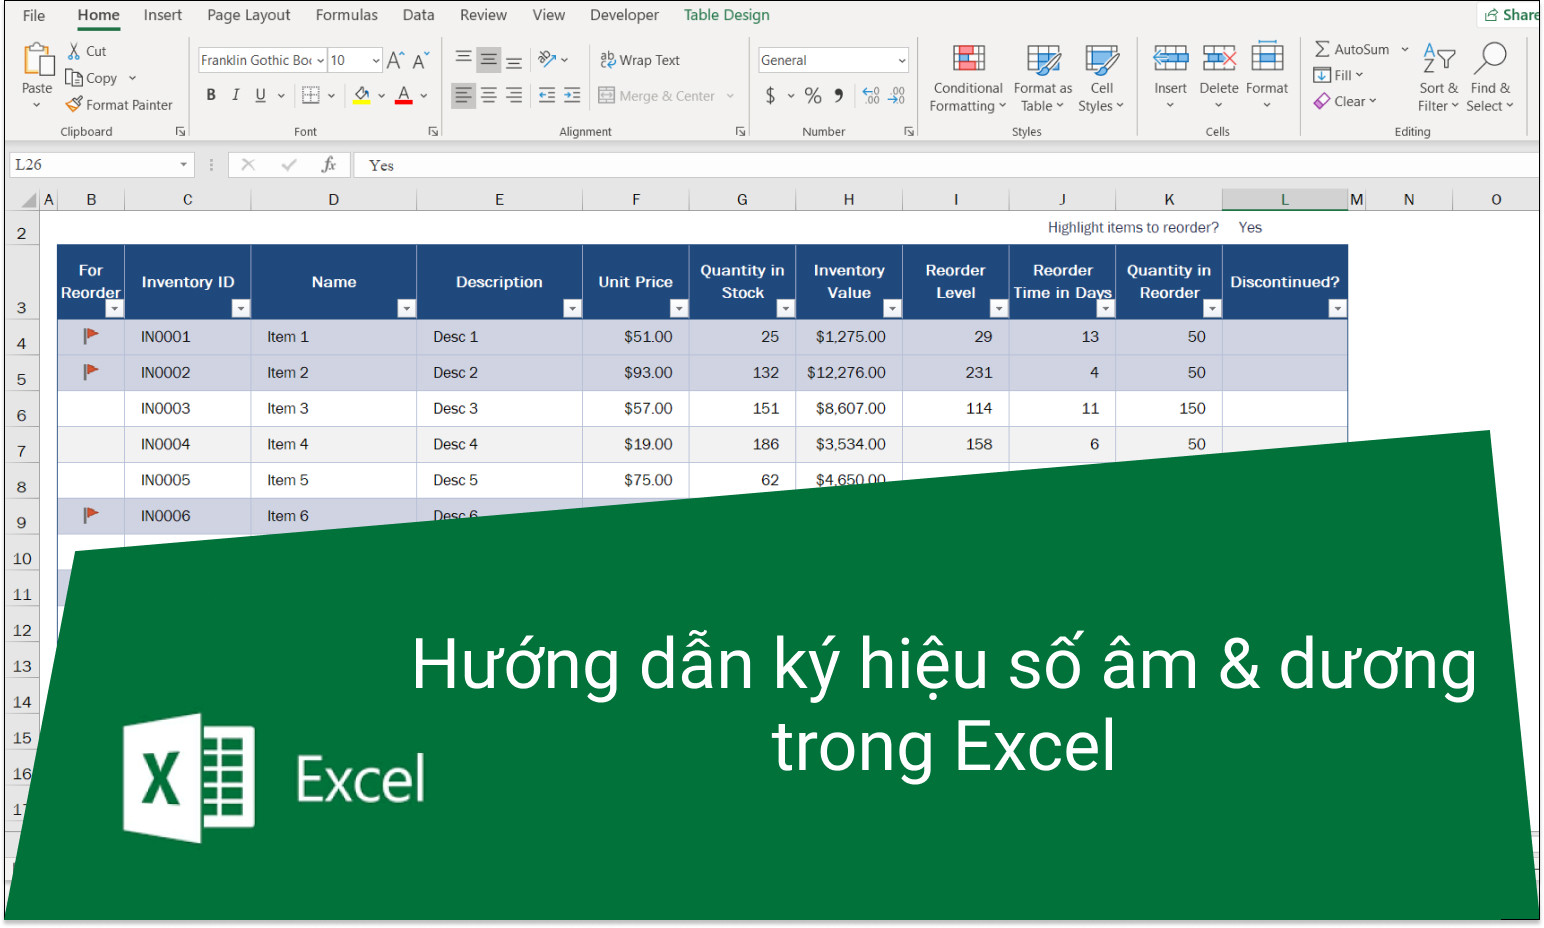 Hướng dẫn định dạng thêm ký hiệu + hoặc - (dương hoặc âm) trong Excel